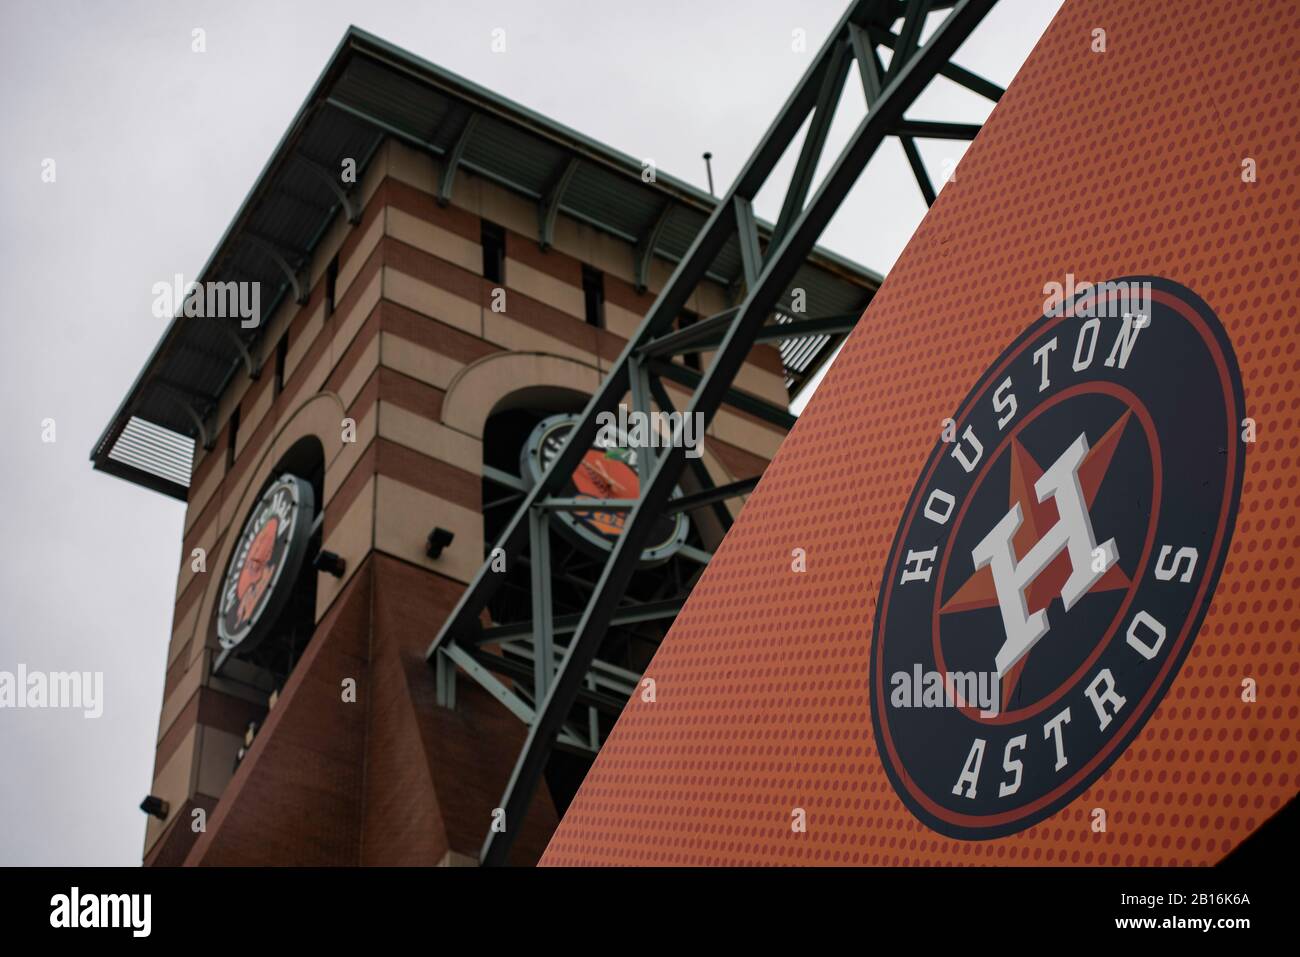 Houston, Texas - 11. Februar 2020: MLB's Houston Astros Logo Outside Minute Maid Park Baseballstadion Stockfoto